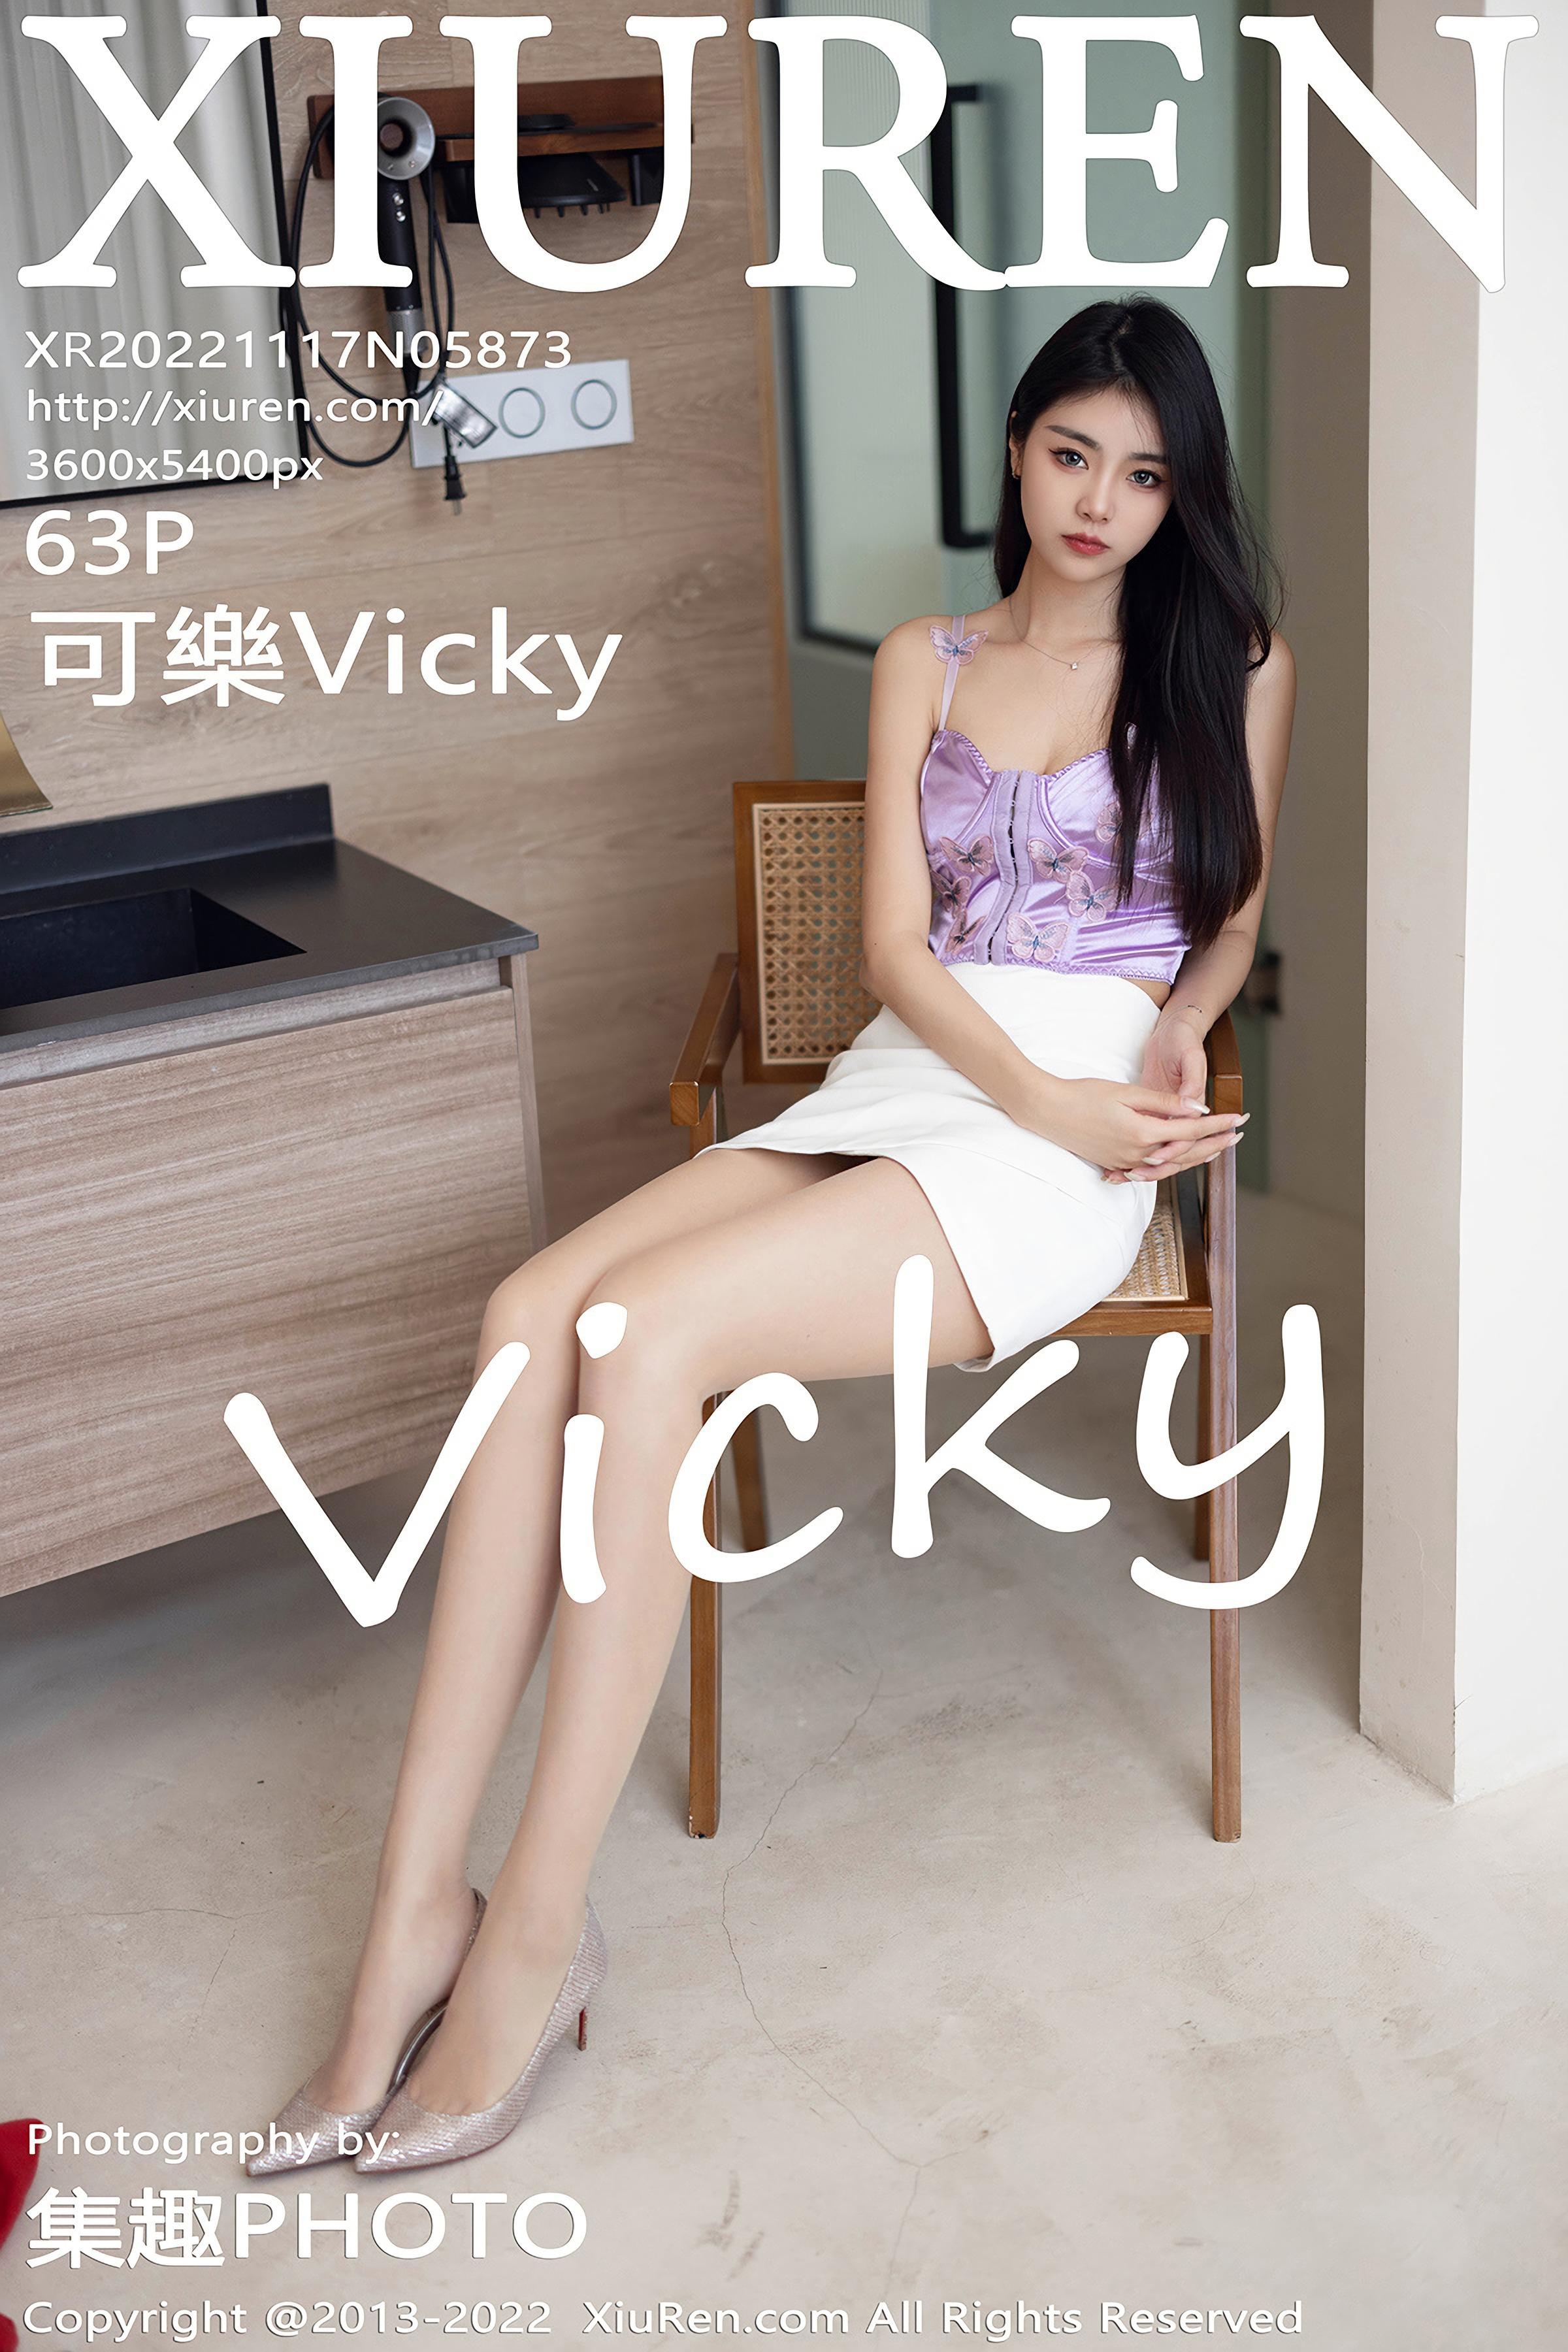 [XiuRen秀人网]2022.11.17 NO.5873 可樂Vicky 白色短裙与紫色内衣加肉丝美腿性感私房写真集,cover